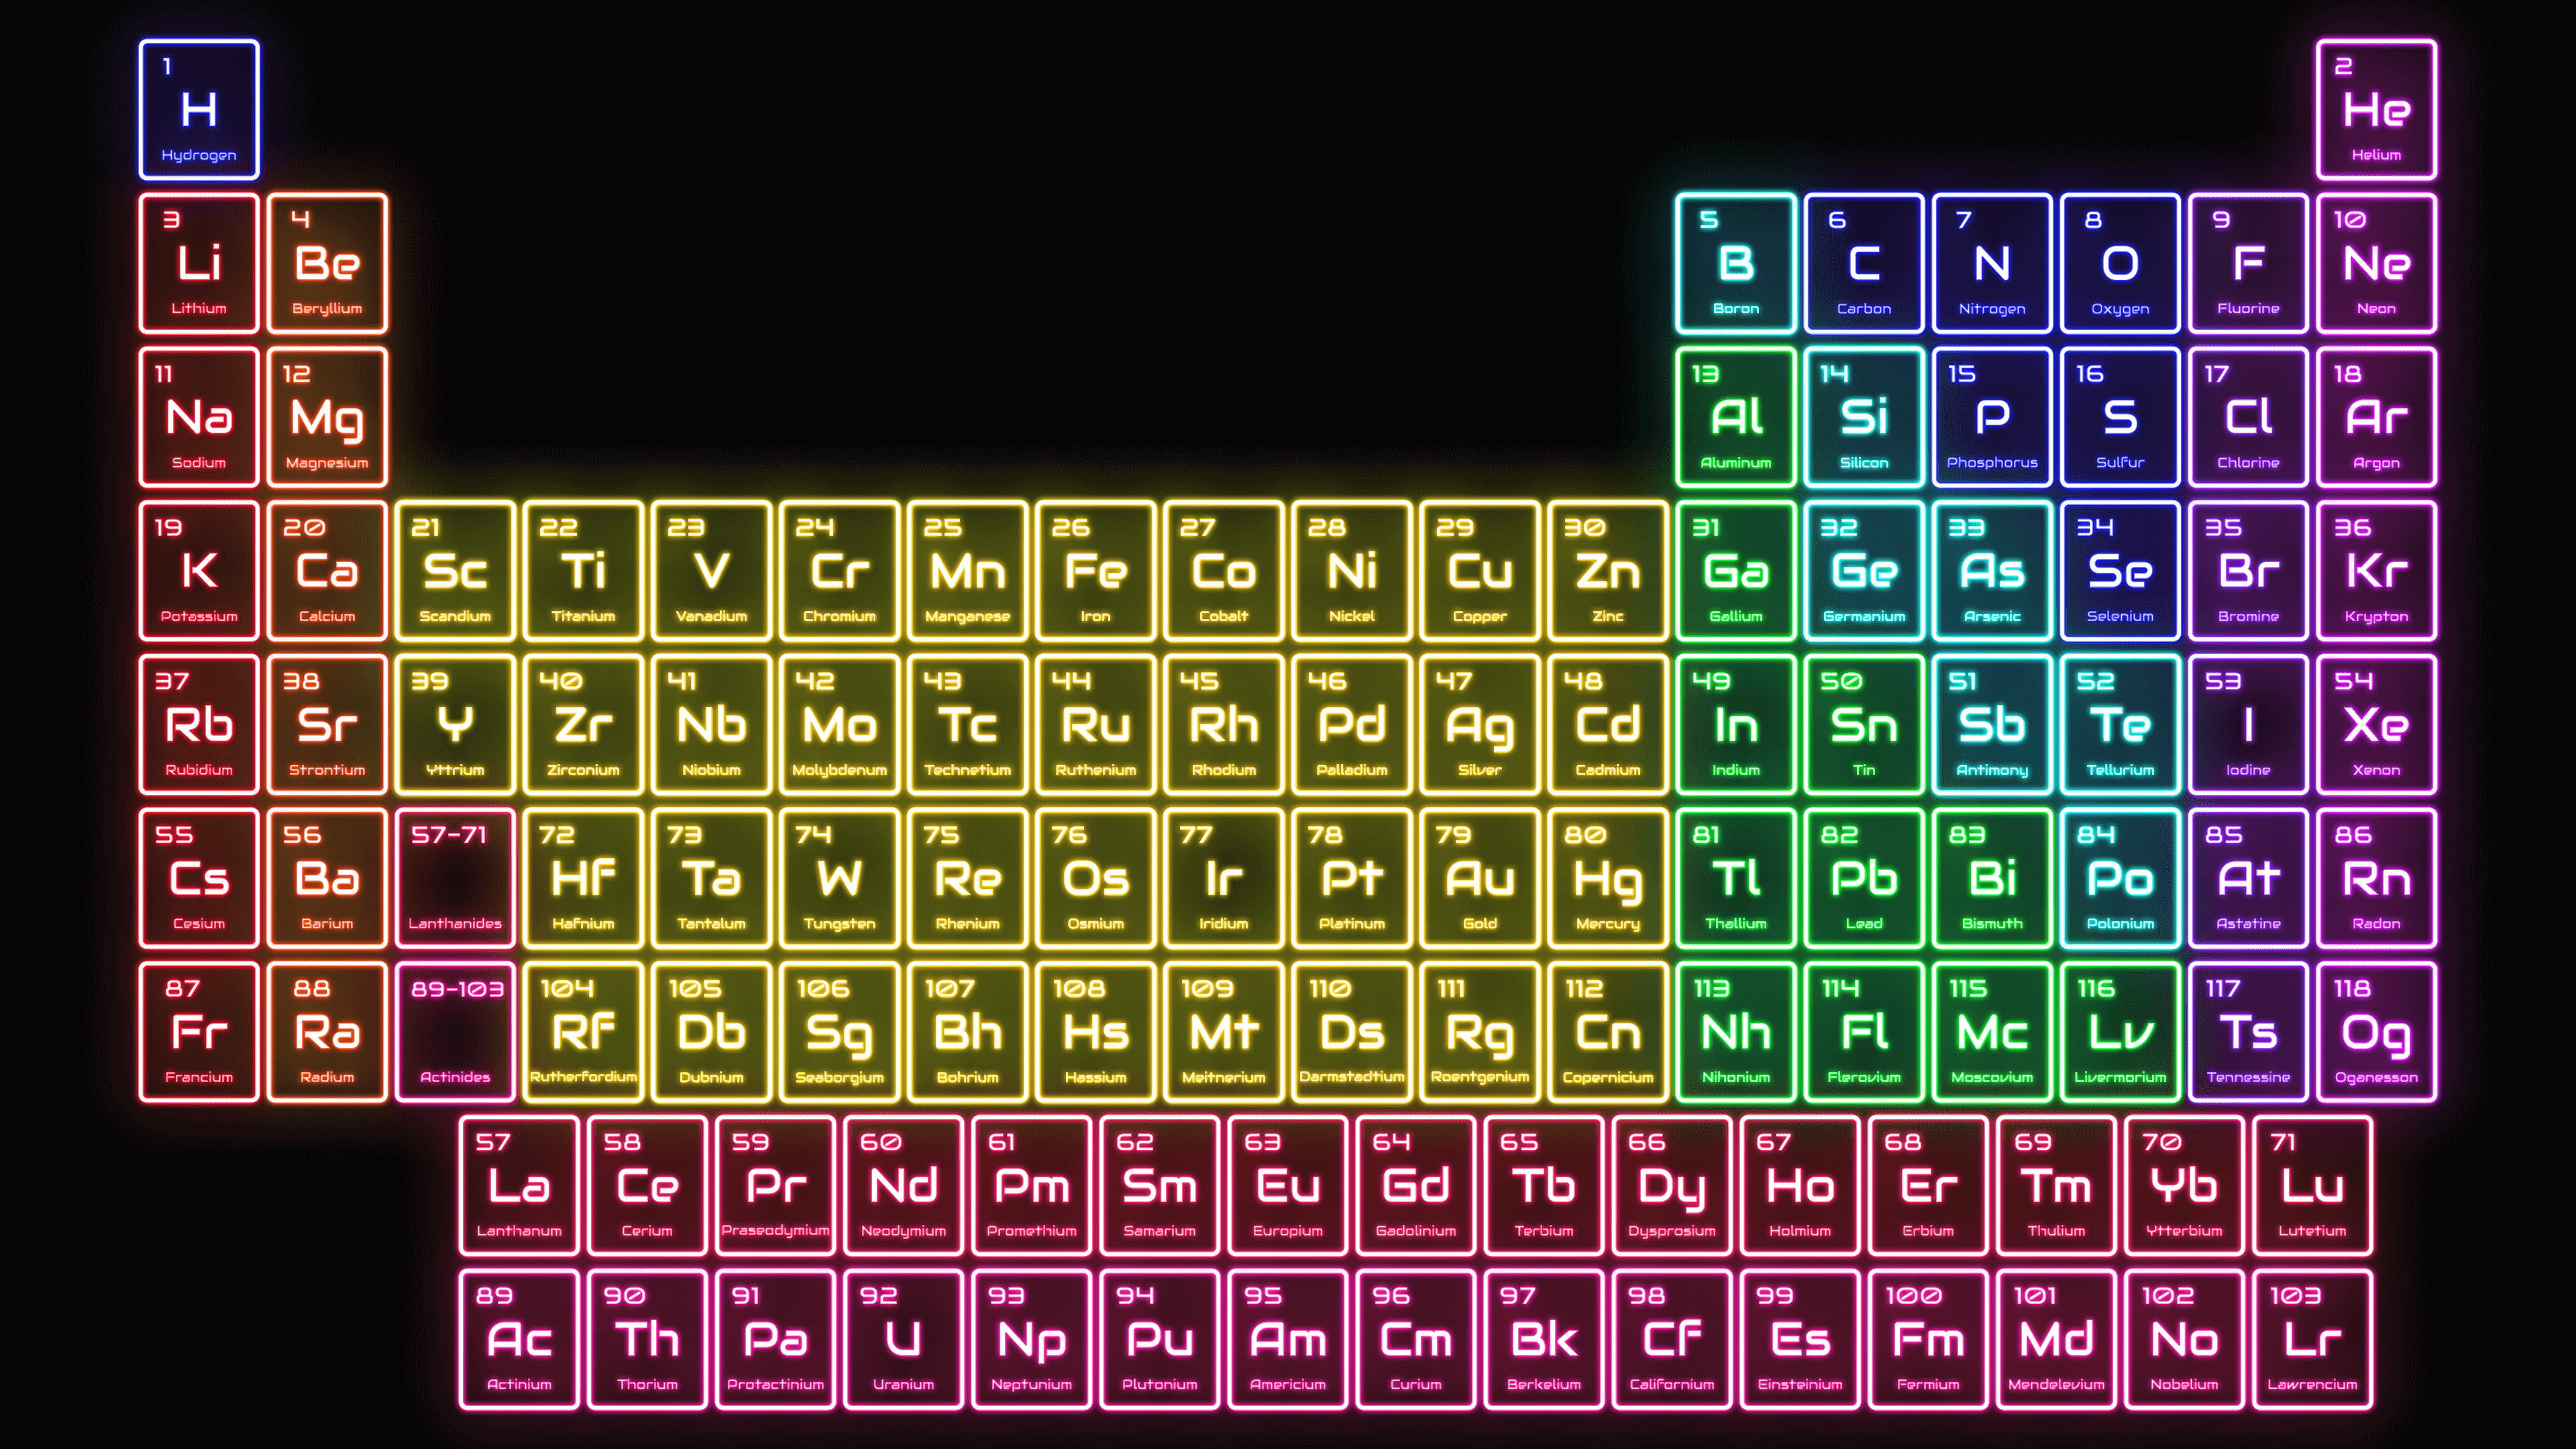 Neon periodic table.com